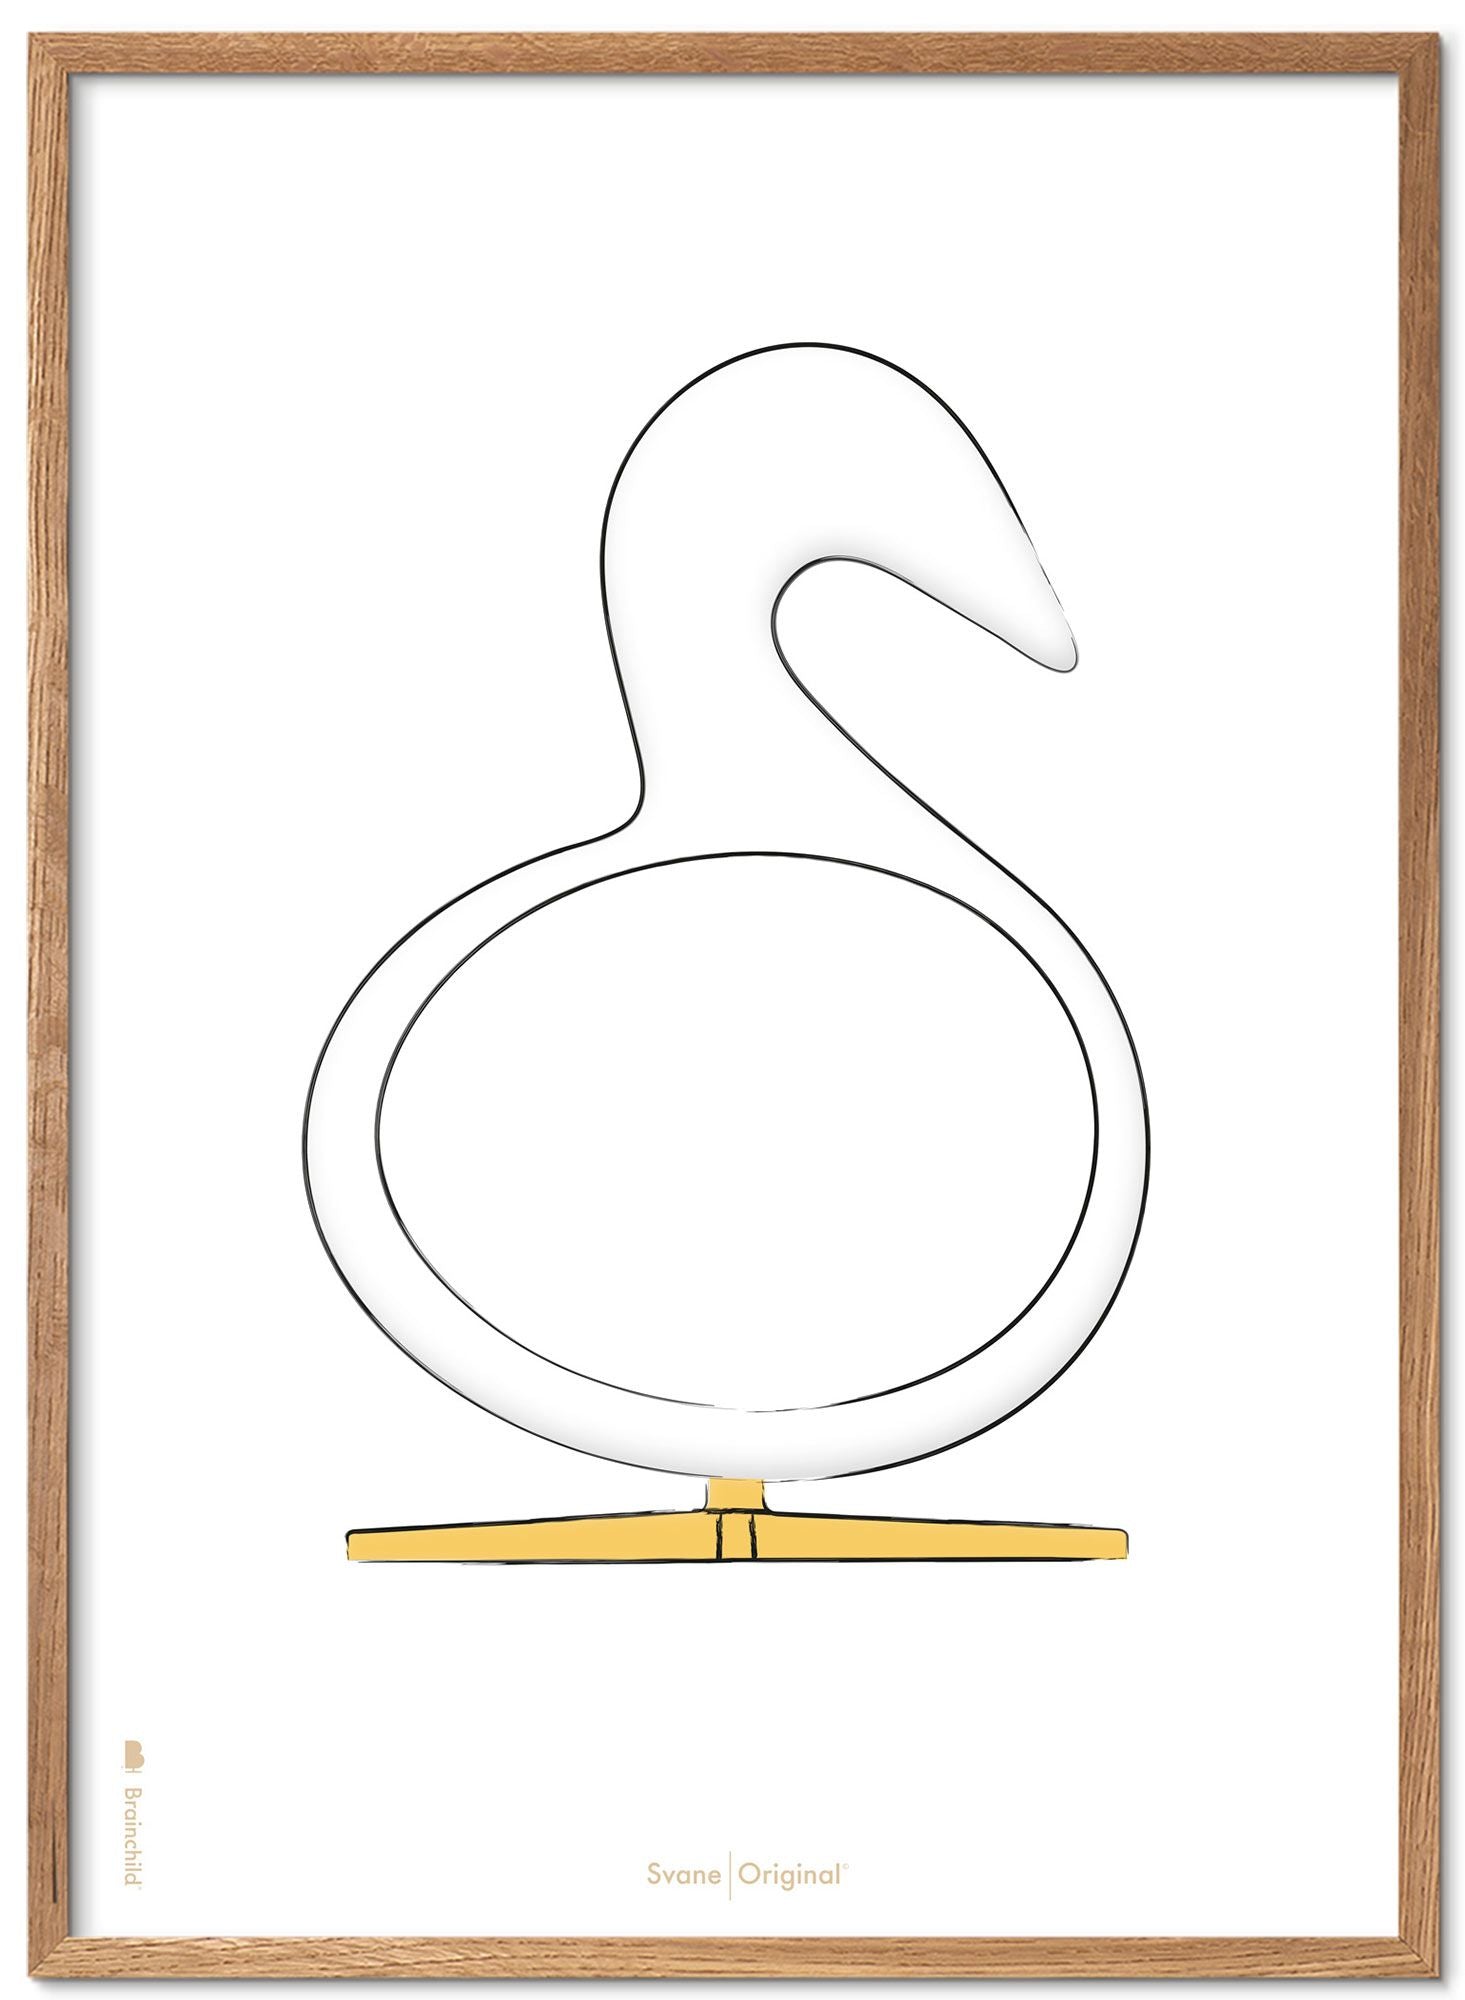 Brainchild Cygne design sketch poster cadre en bois léger 70x100 cm sur fond blanc